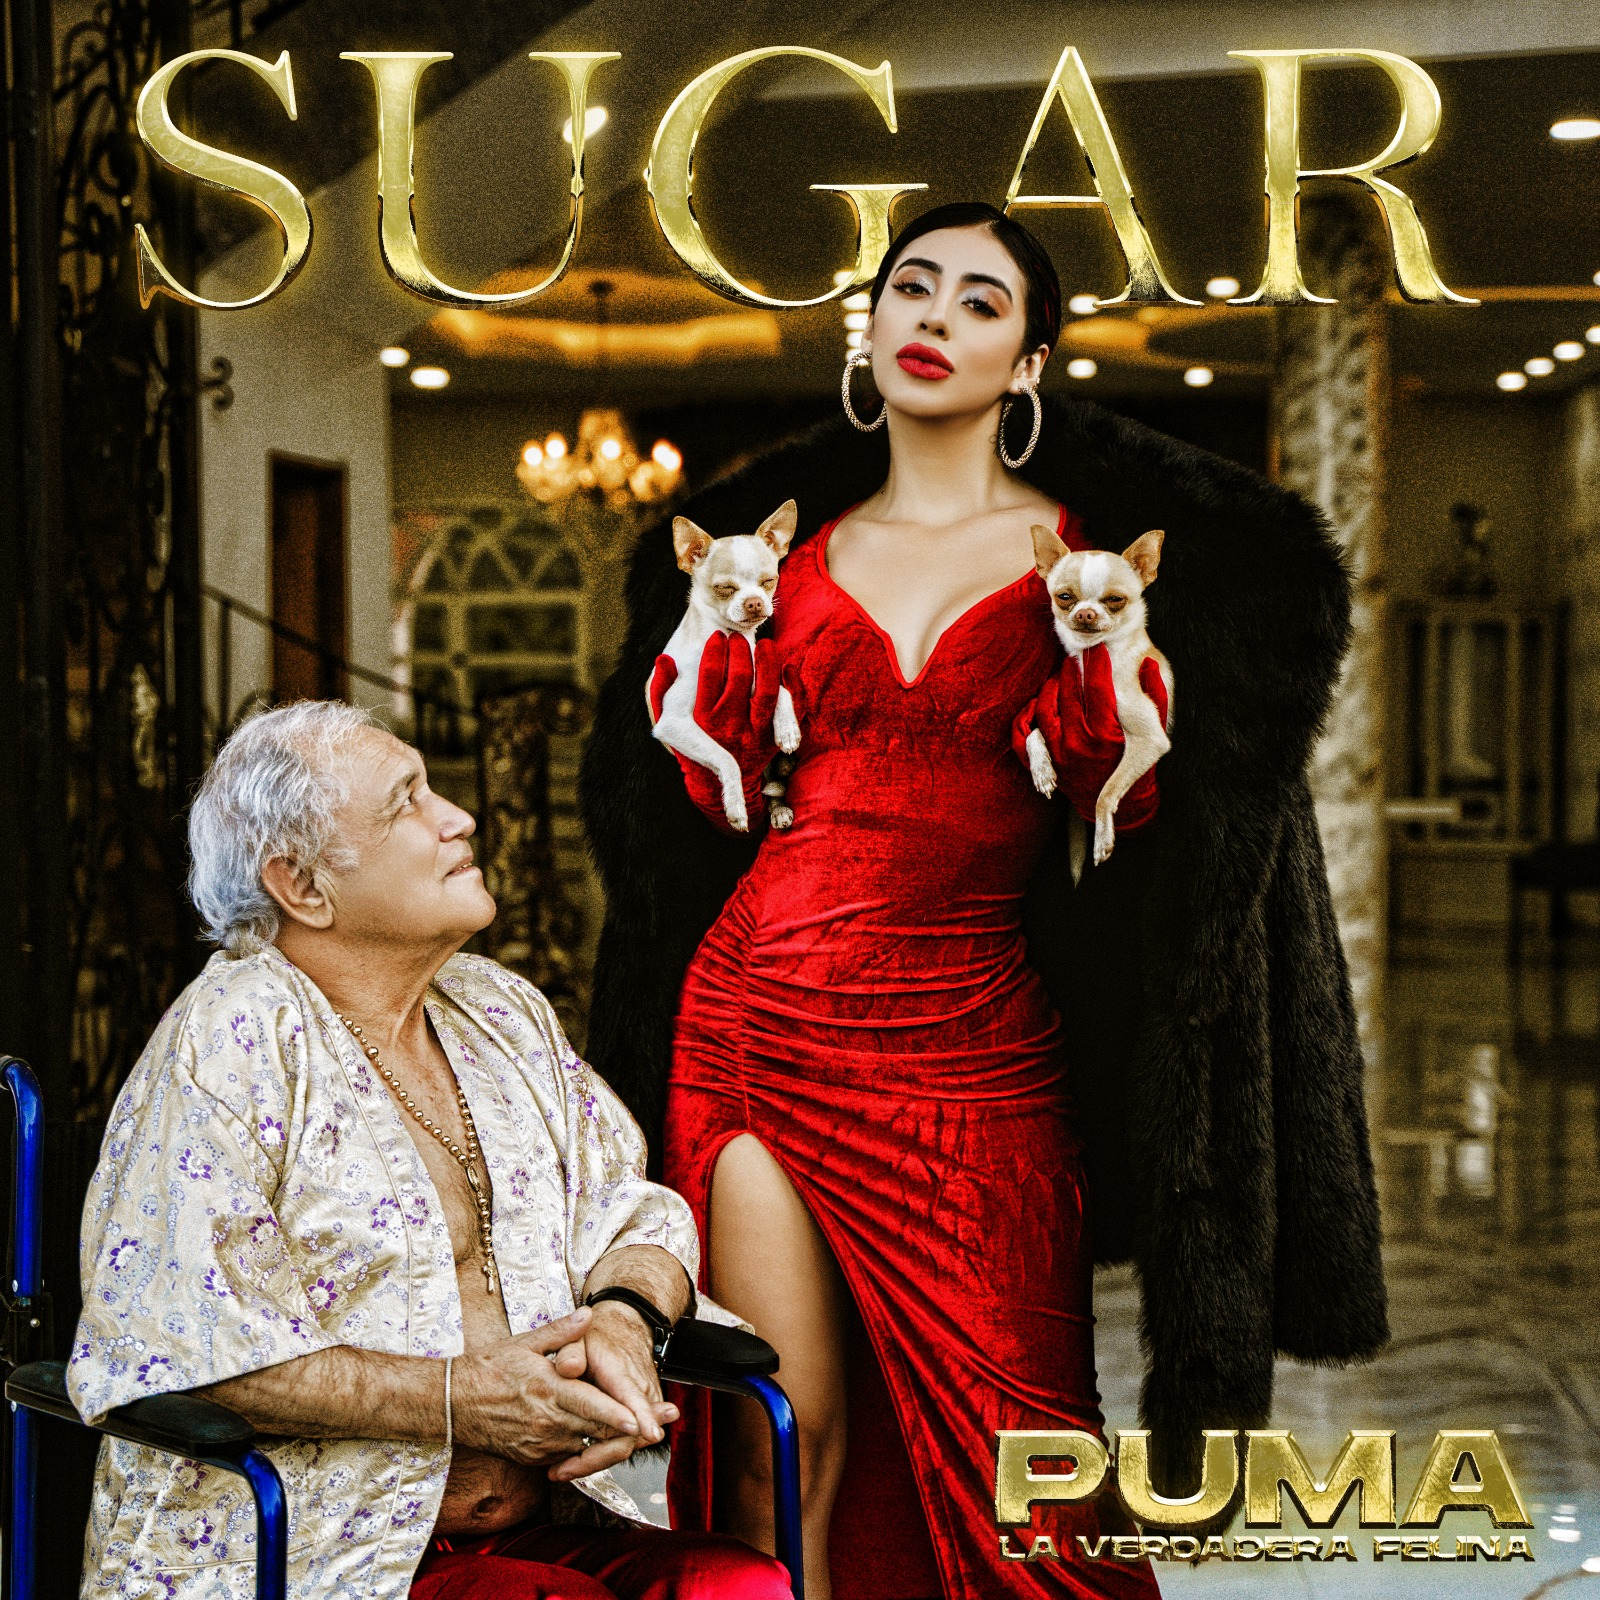 A ritmo de dembow PUMA presenta su nueva canción titulada ‘Sugar’